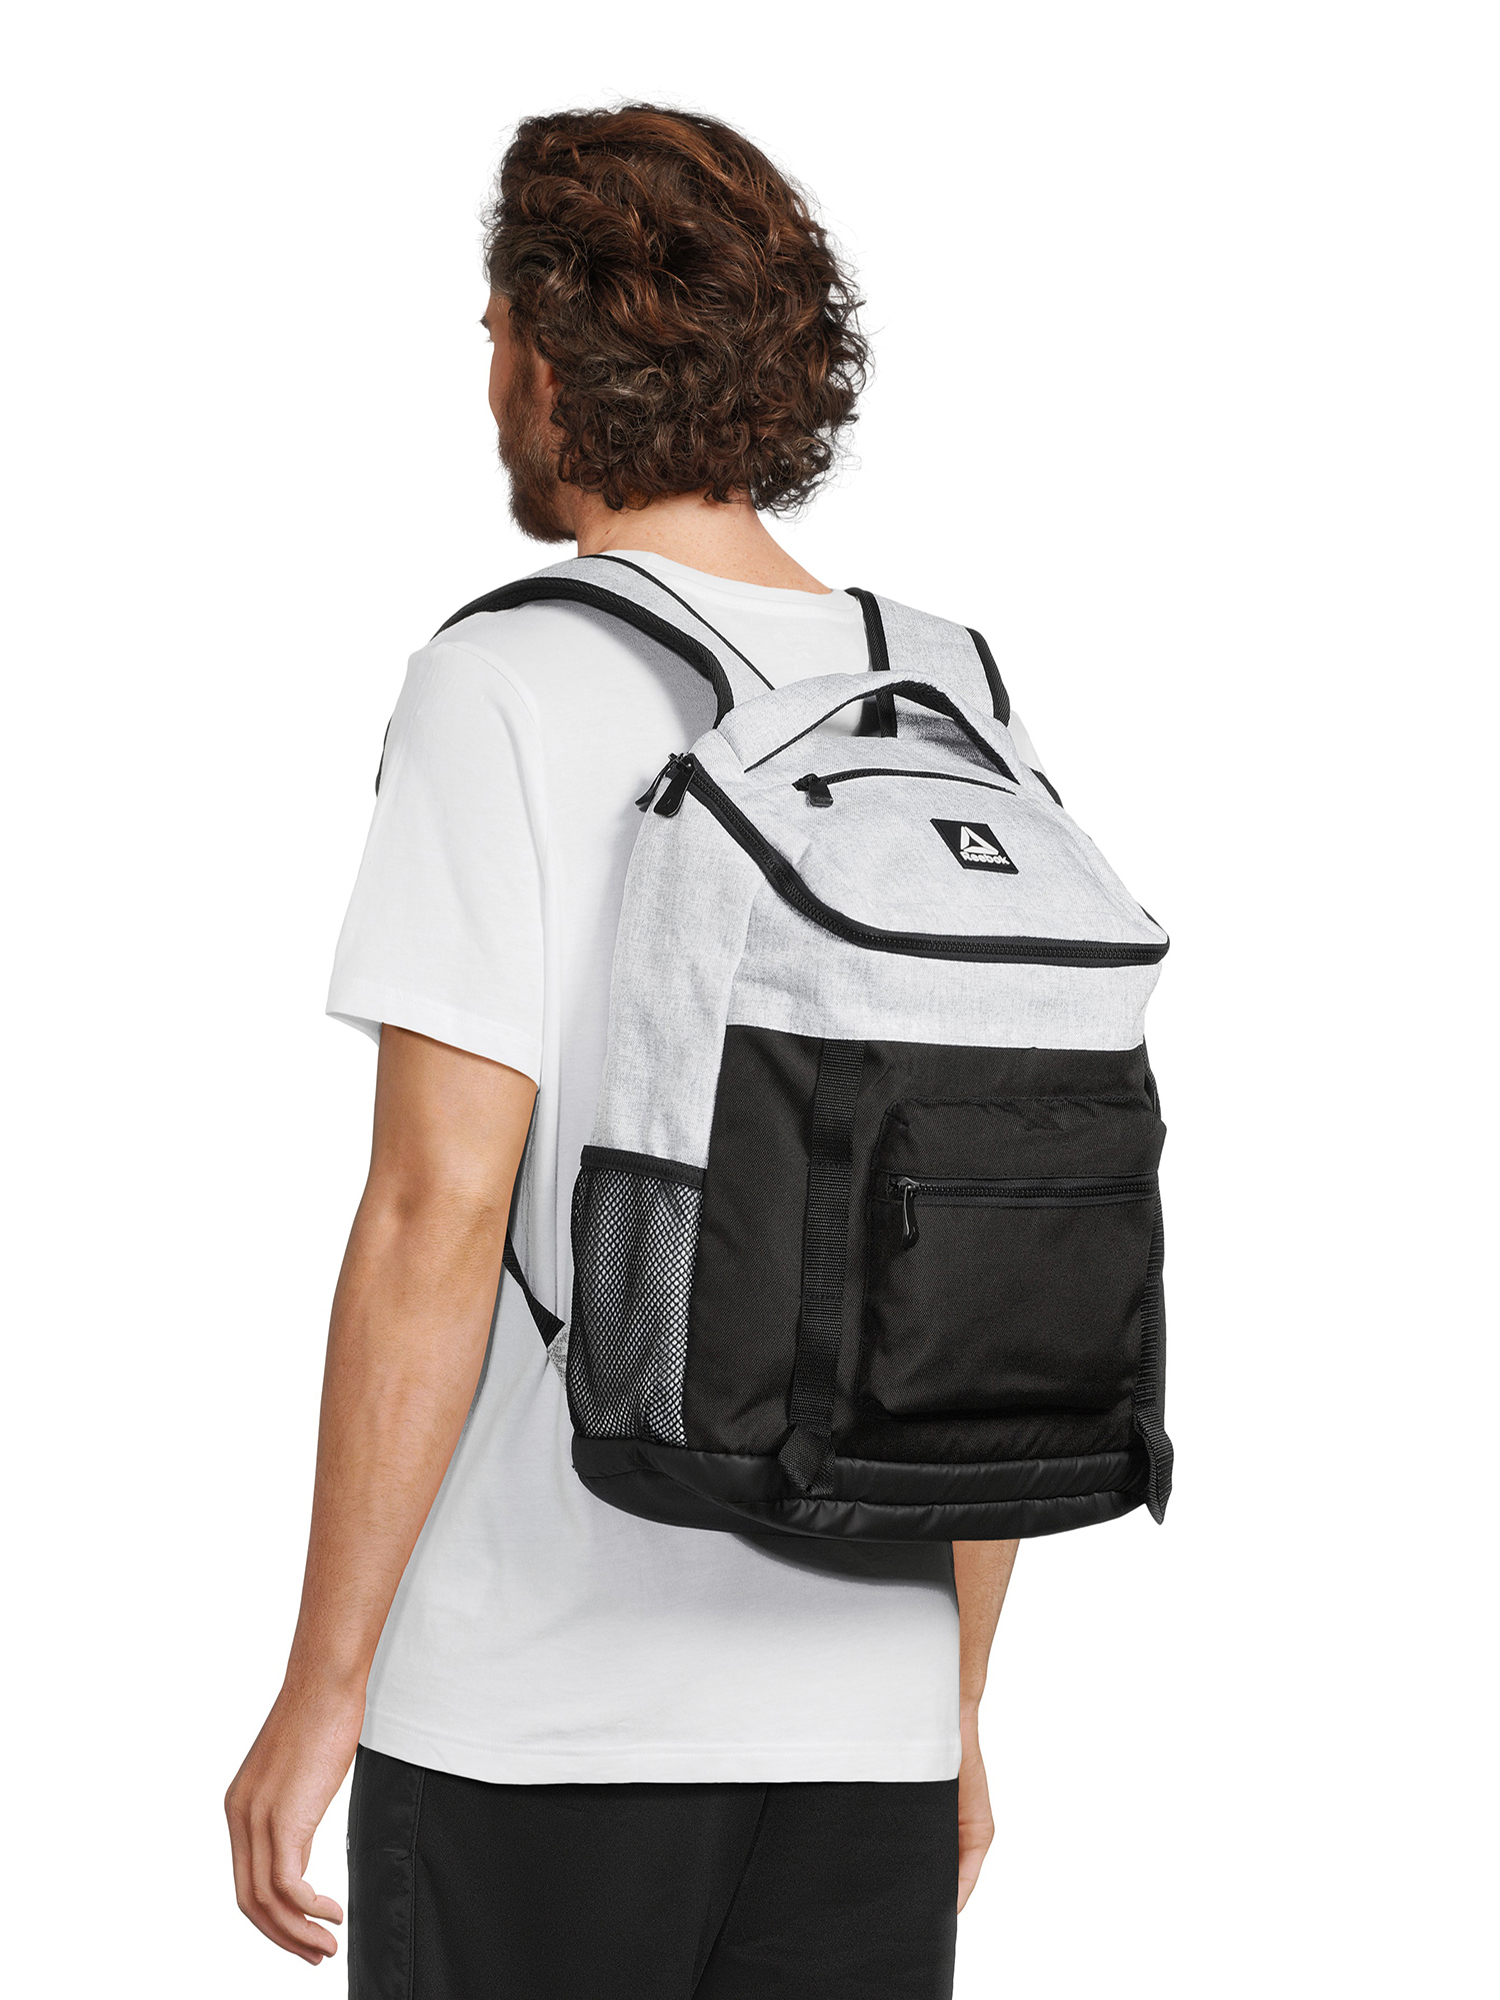 Reebok Unisex Adult Bobbie Top Loader 18.5" Laptop Backpack, Light Heather Grey - image 3 of 6